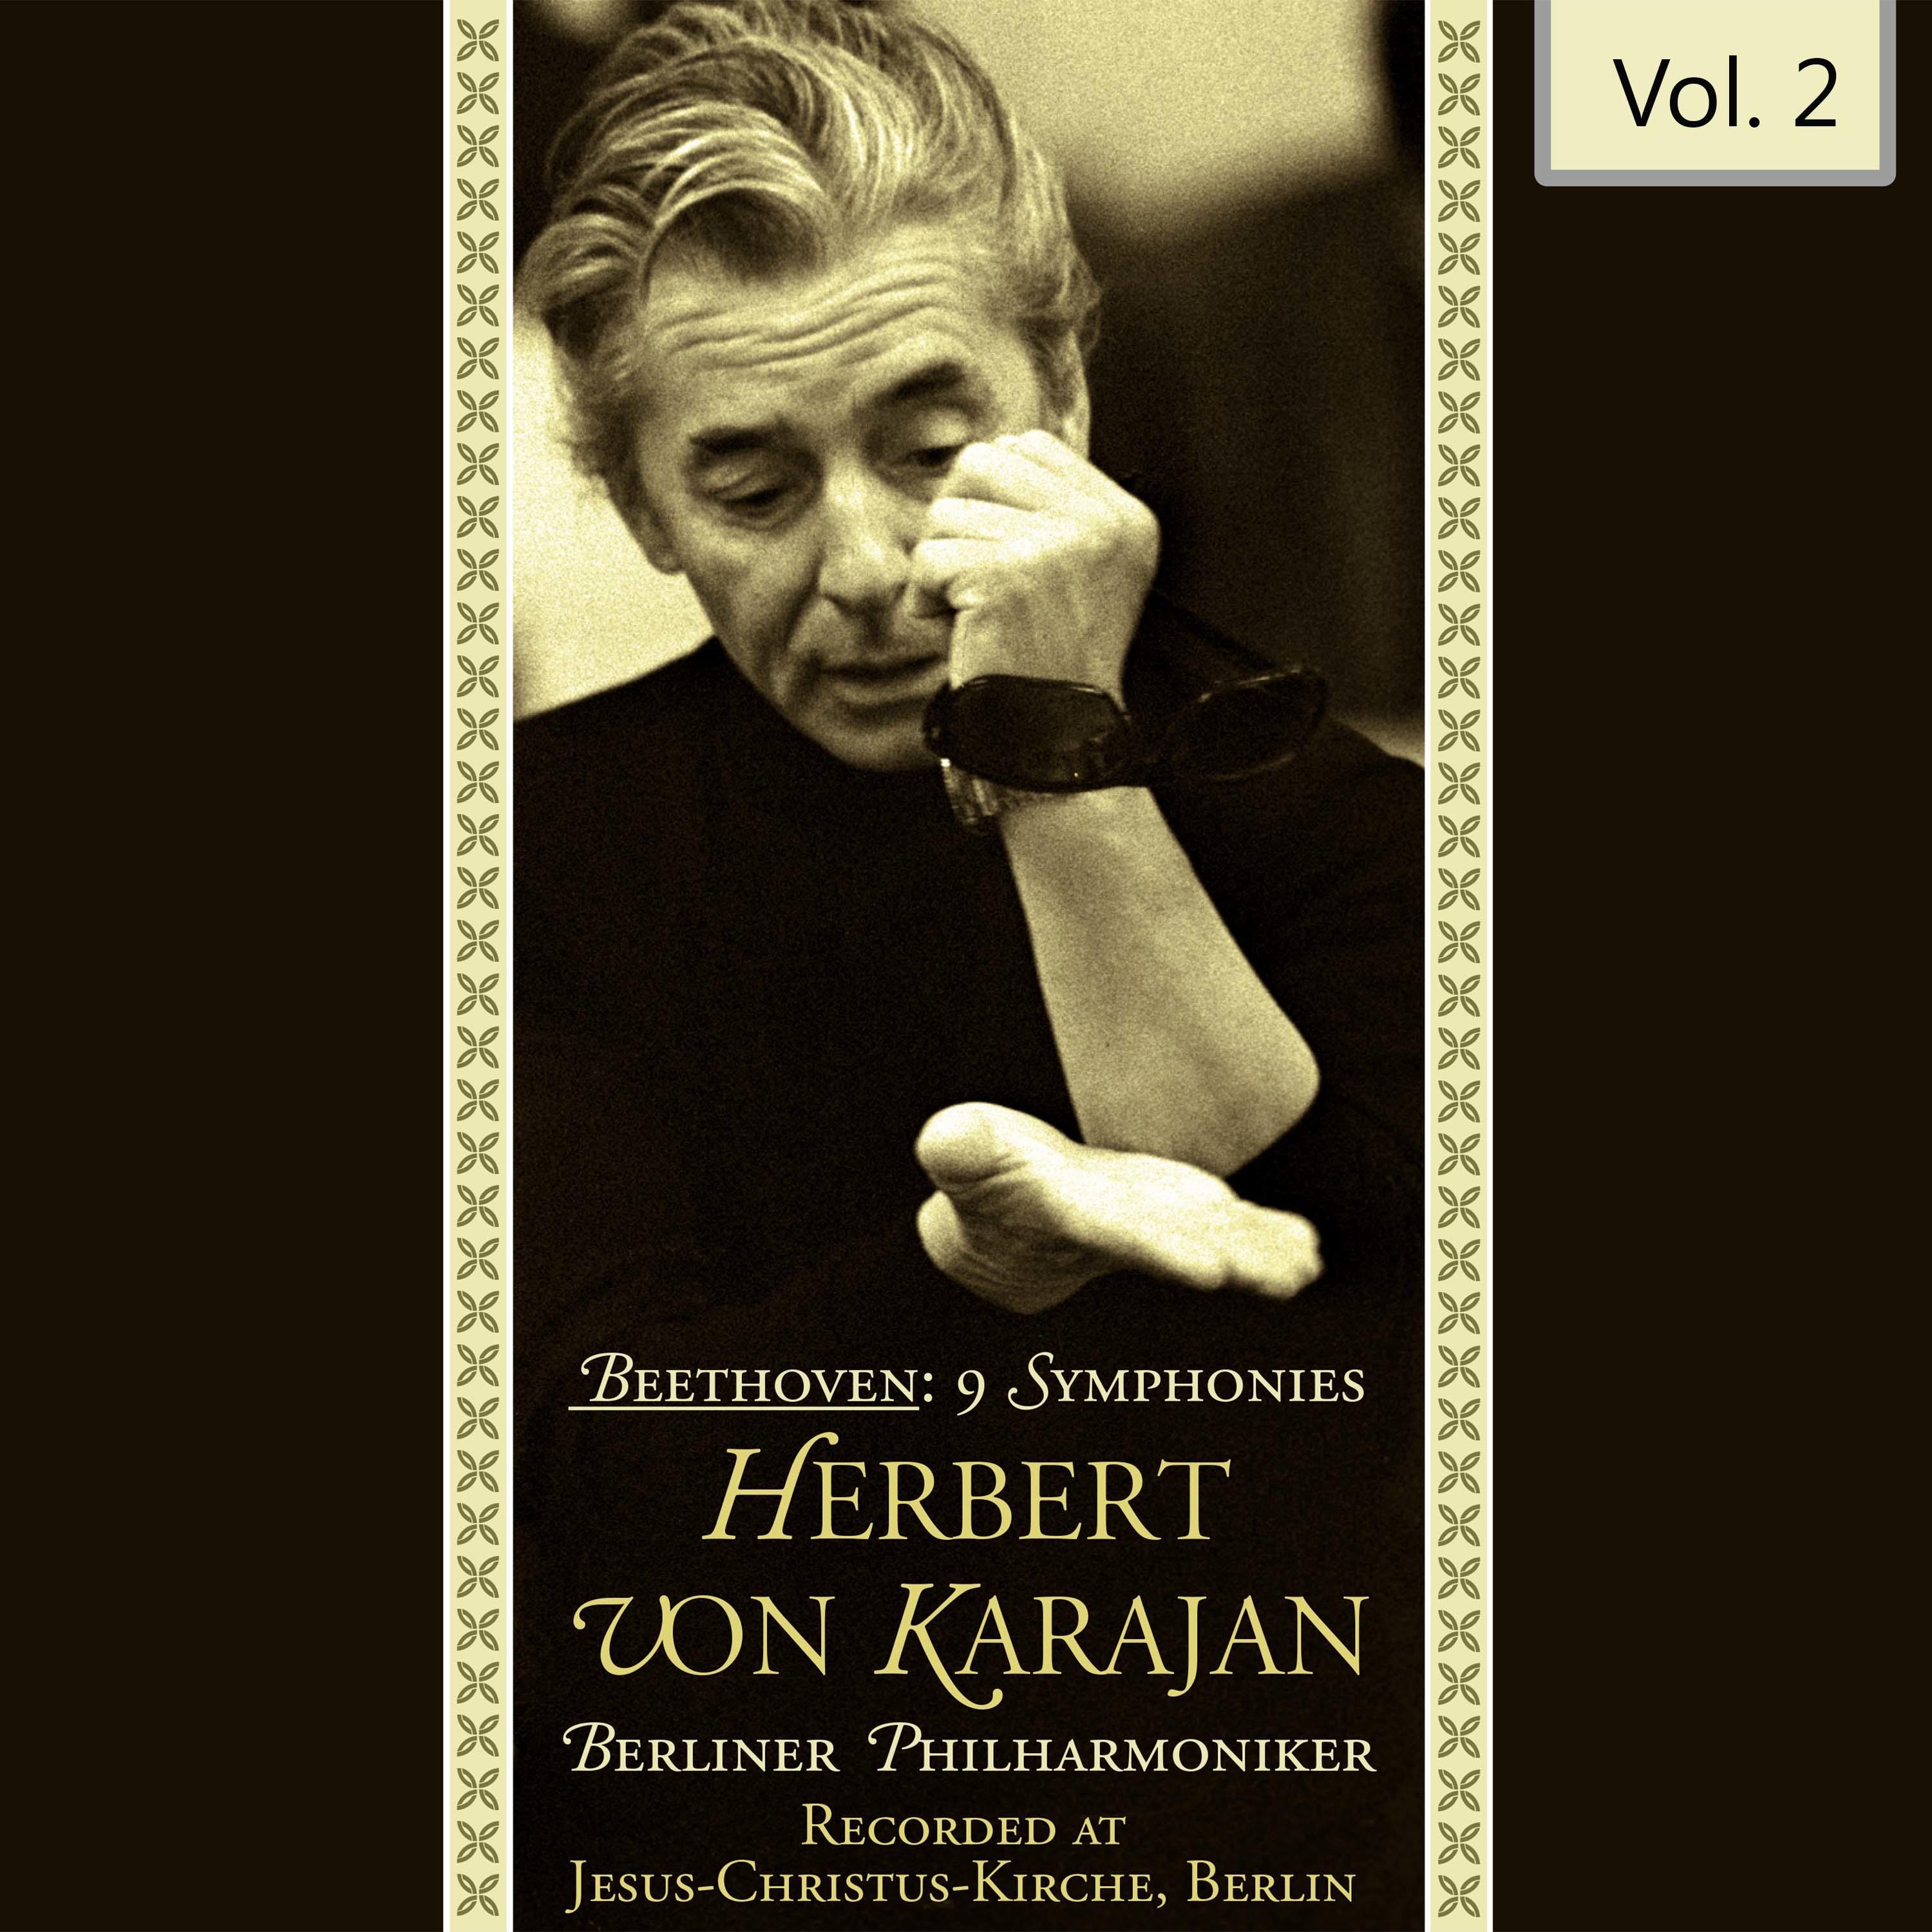 Beethoven: 9 Symphonies - Herbert Von Karajan, Vol. 2